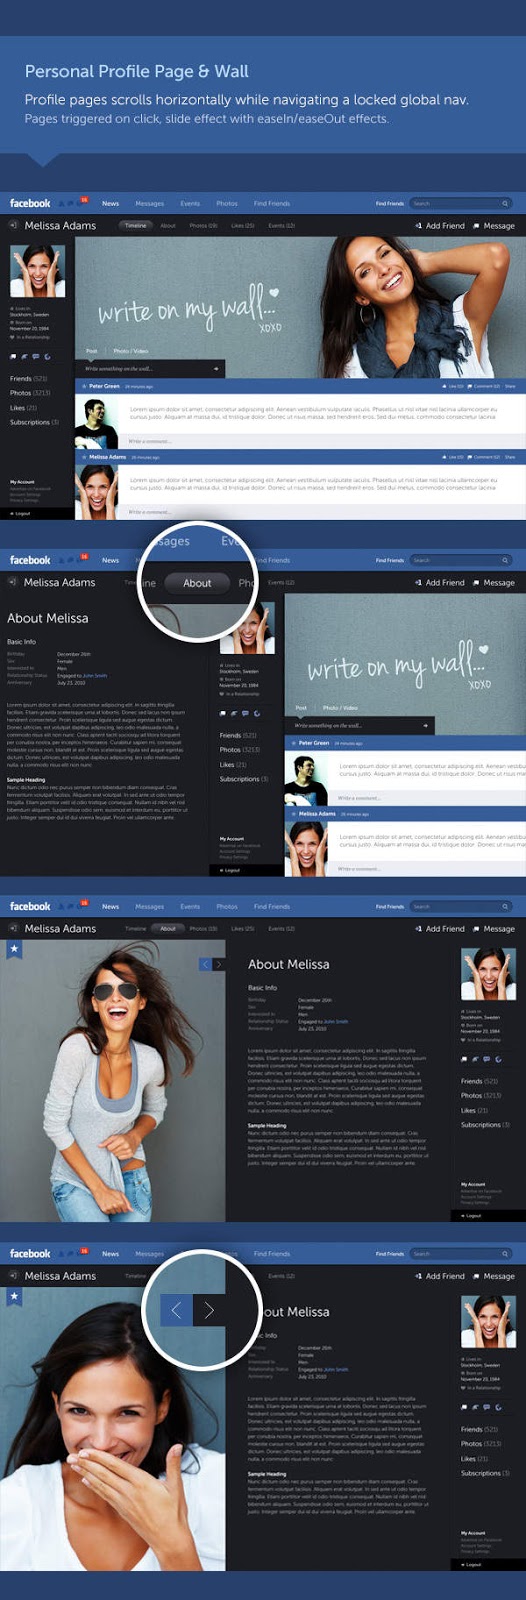 Keren, Tampilan Baru Facebook Yang Akan Datang | Cyber4rt.com